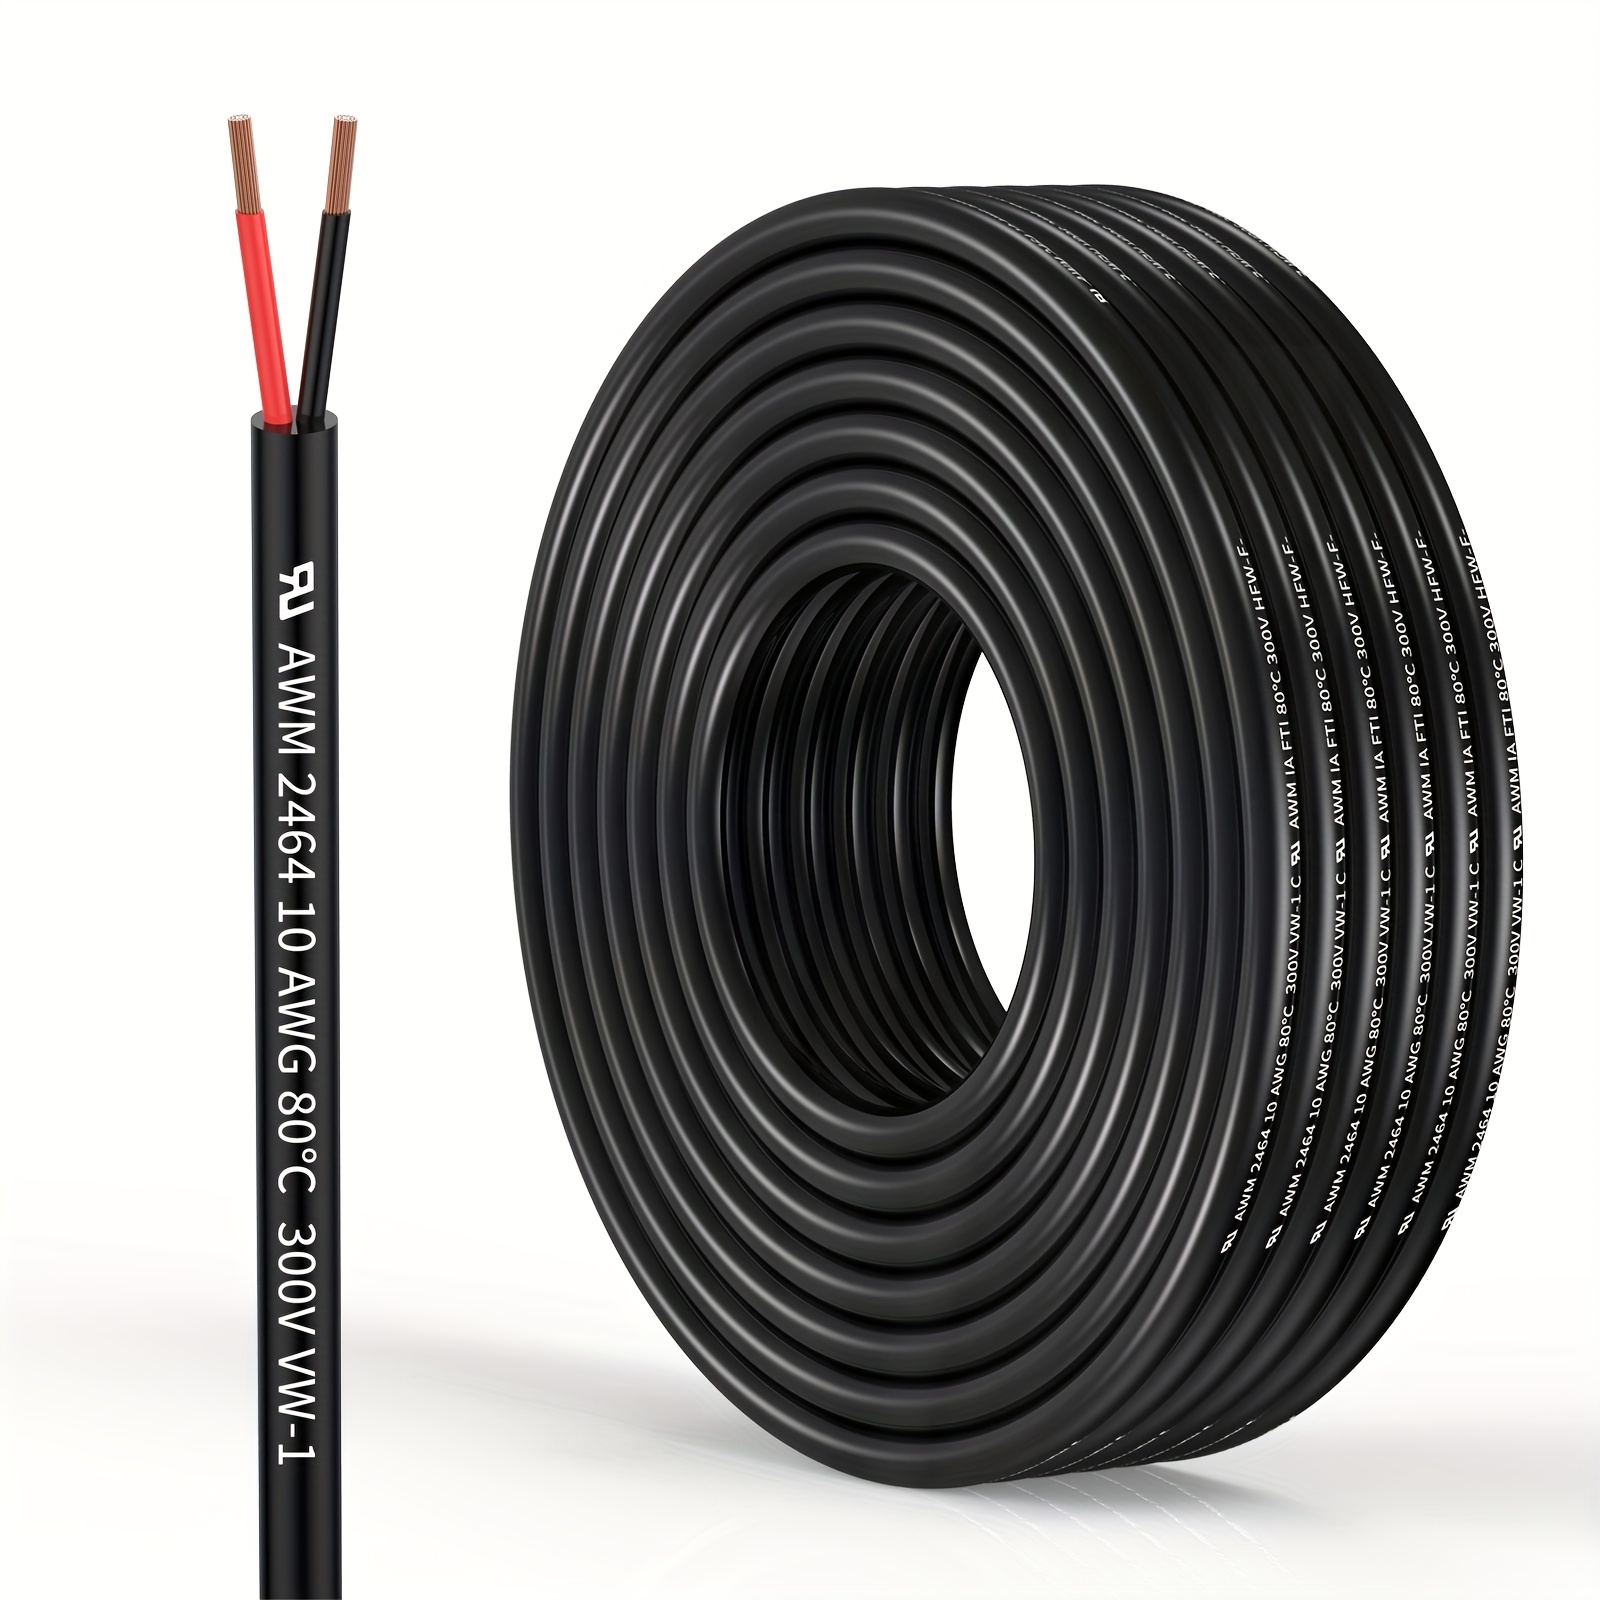 Cable eléctrico manguera 3 hilos, 1 mm2 flexible 150 metros